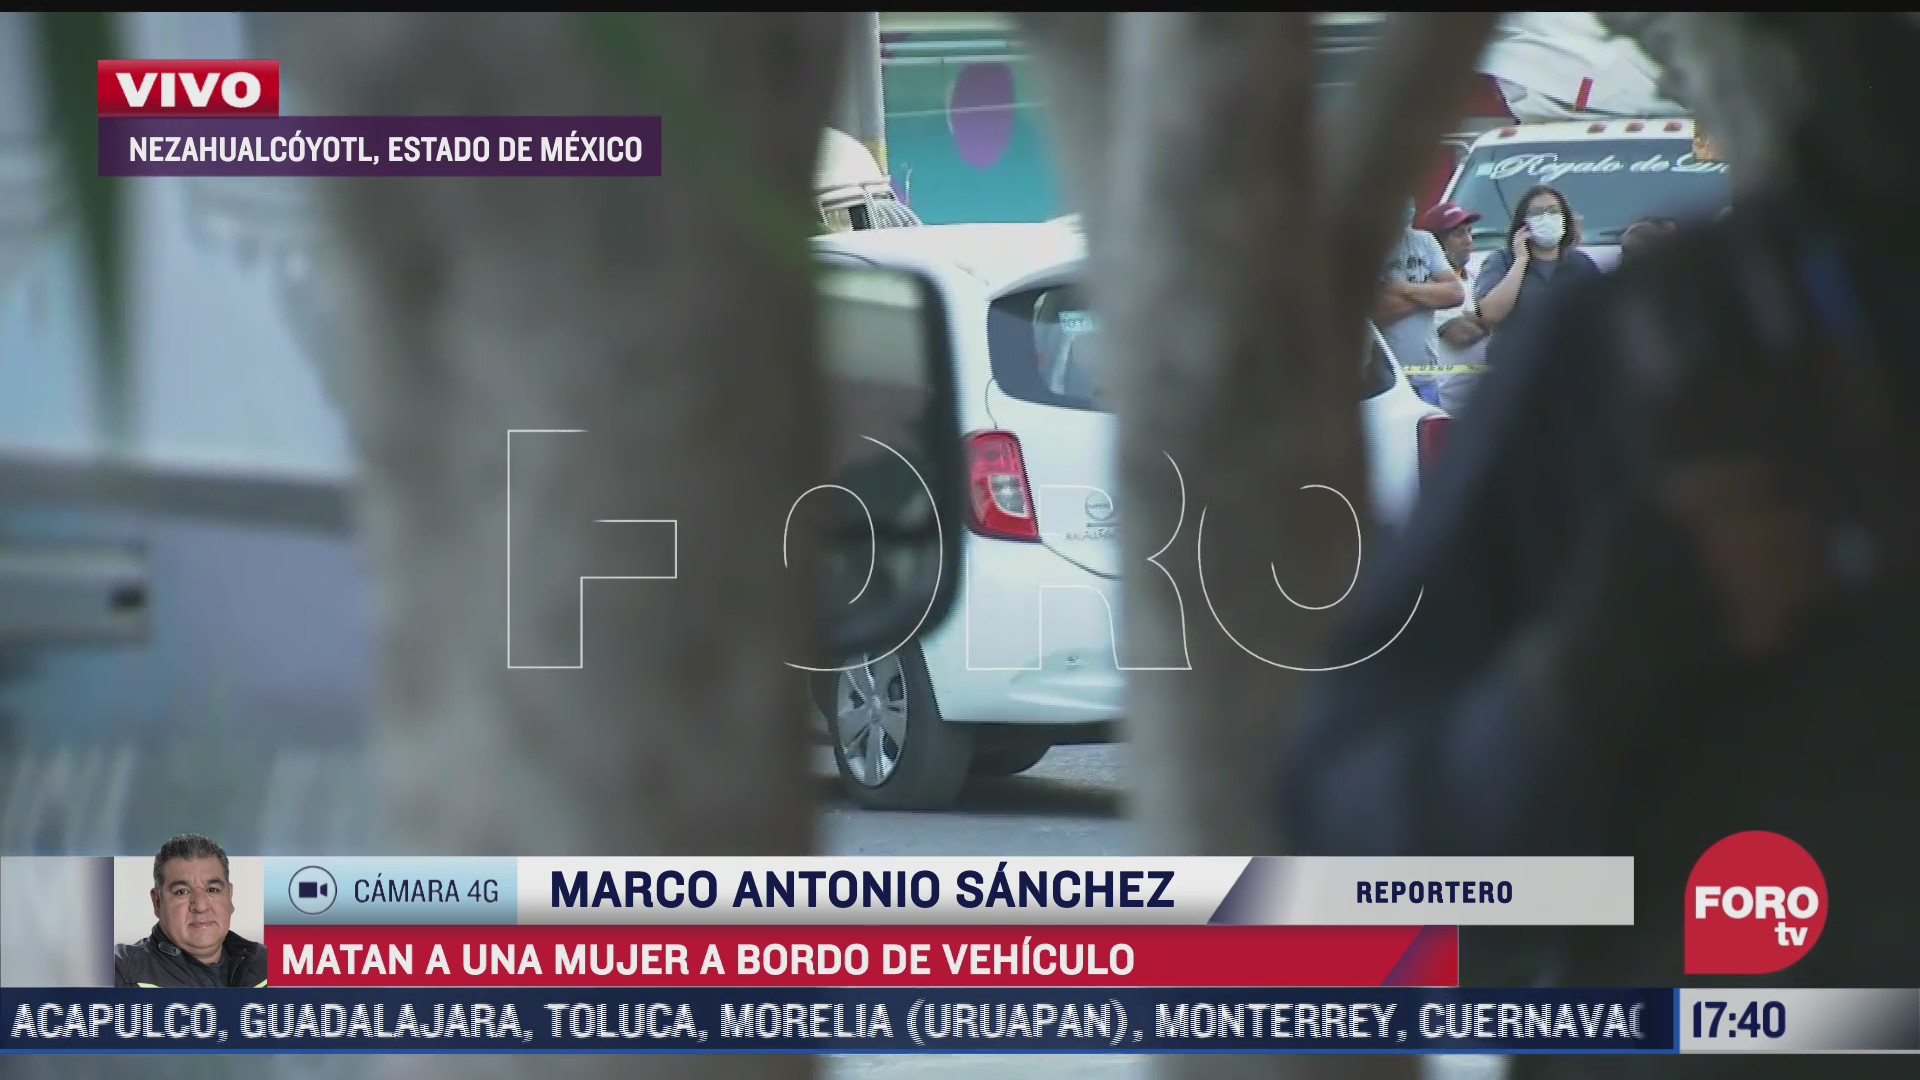 asesinan a mujer a bordo de vehiculo en nezahualcoyotl estado de mexico